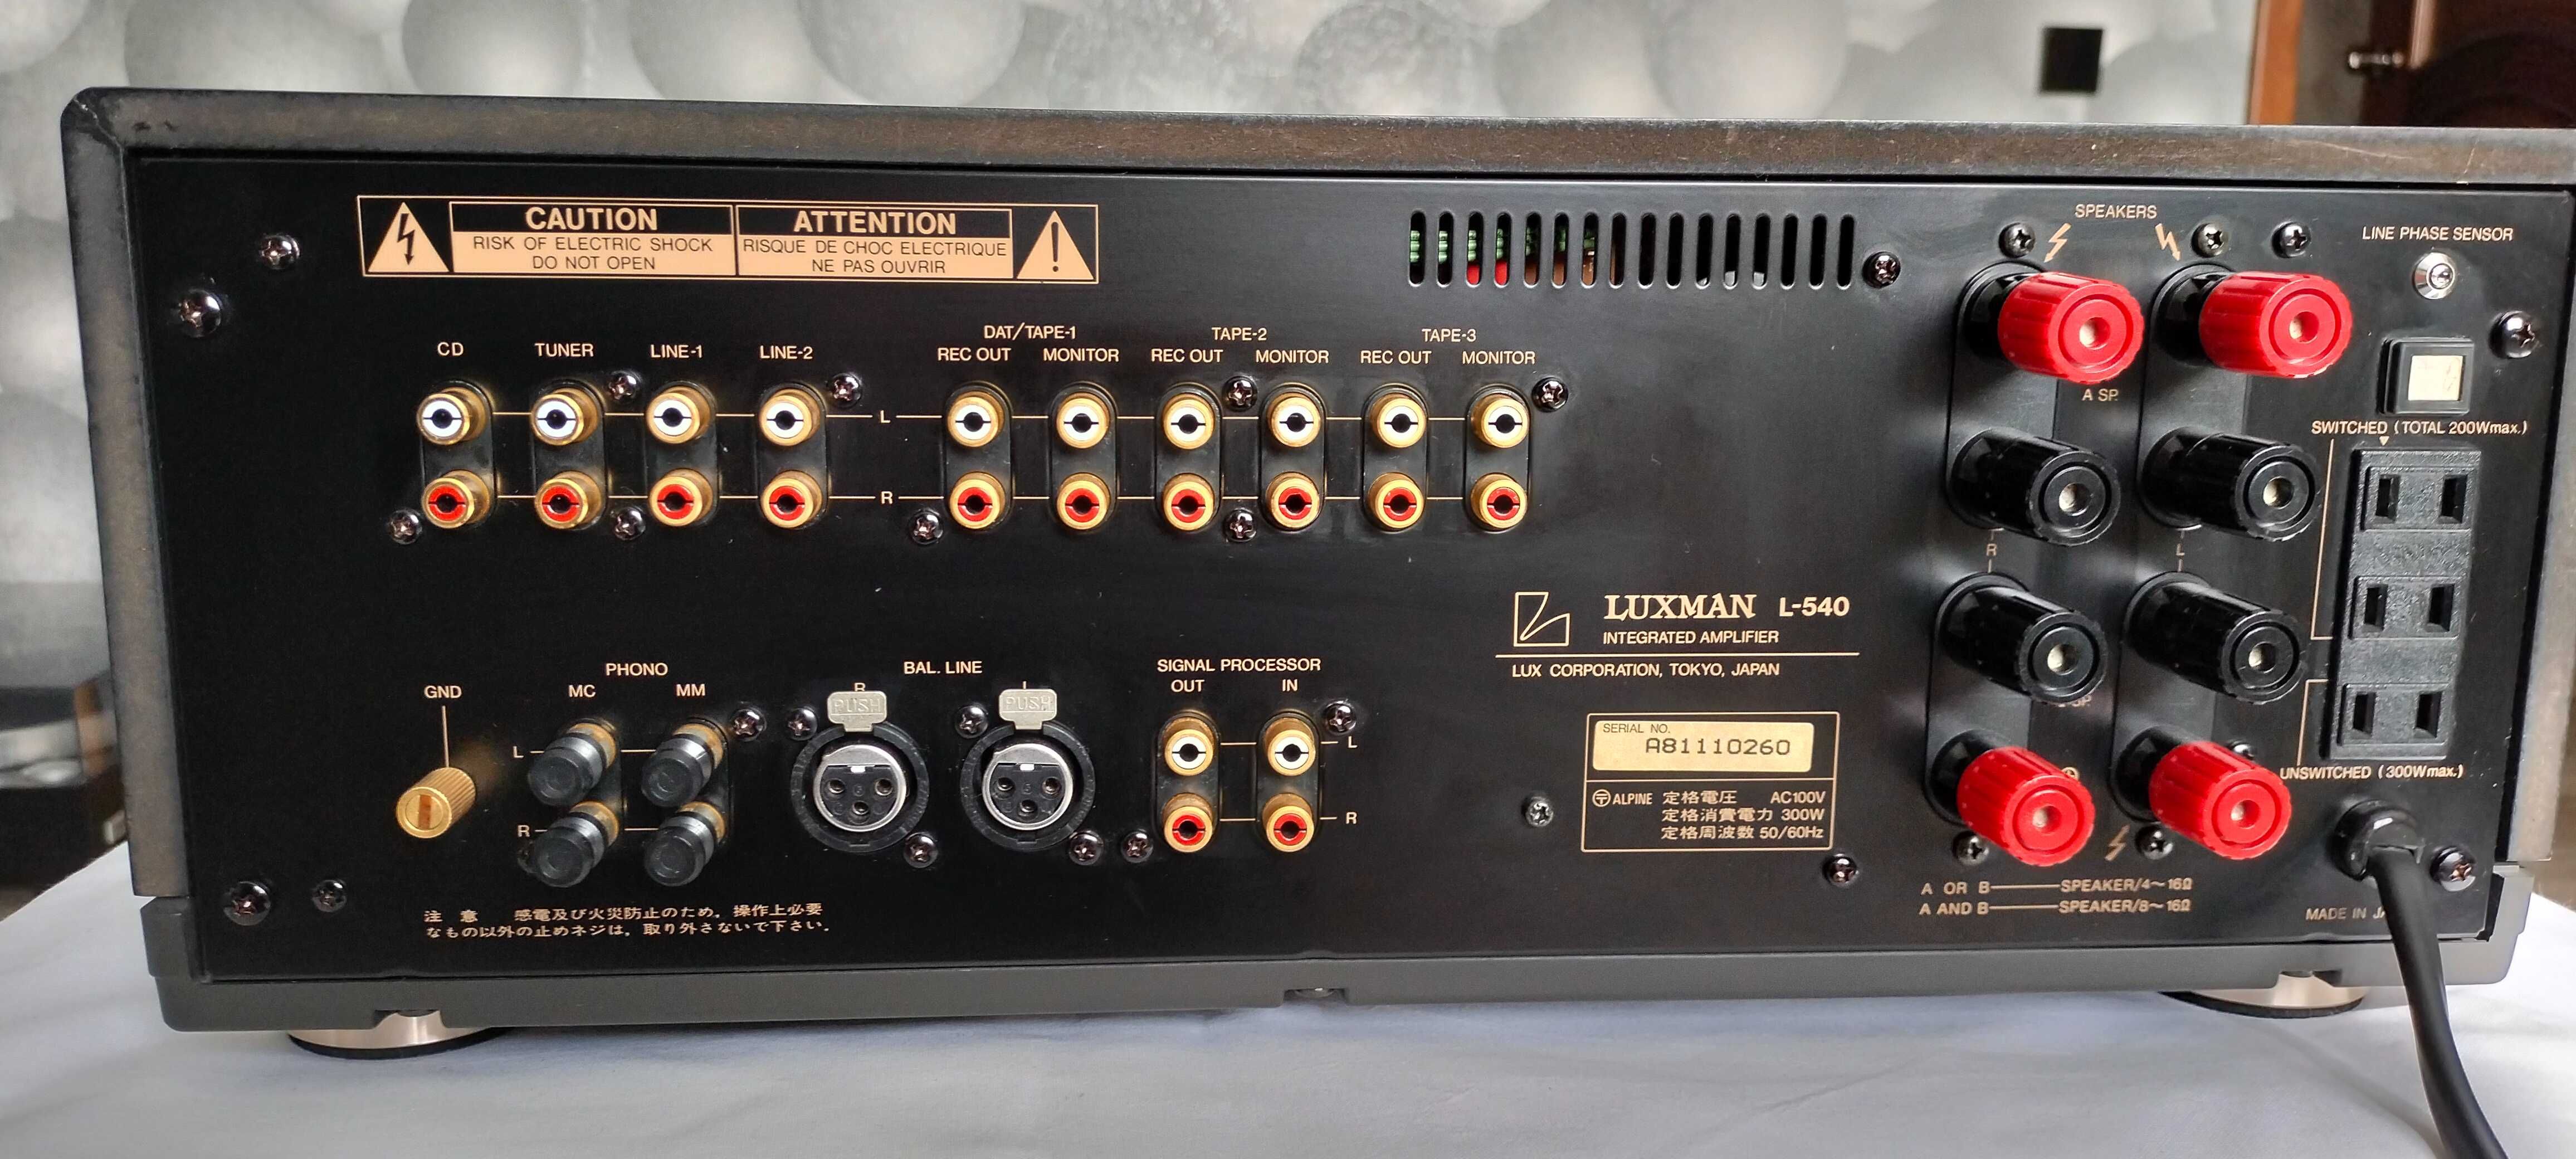 Luxman L-540 Интегральный усилитель